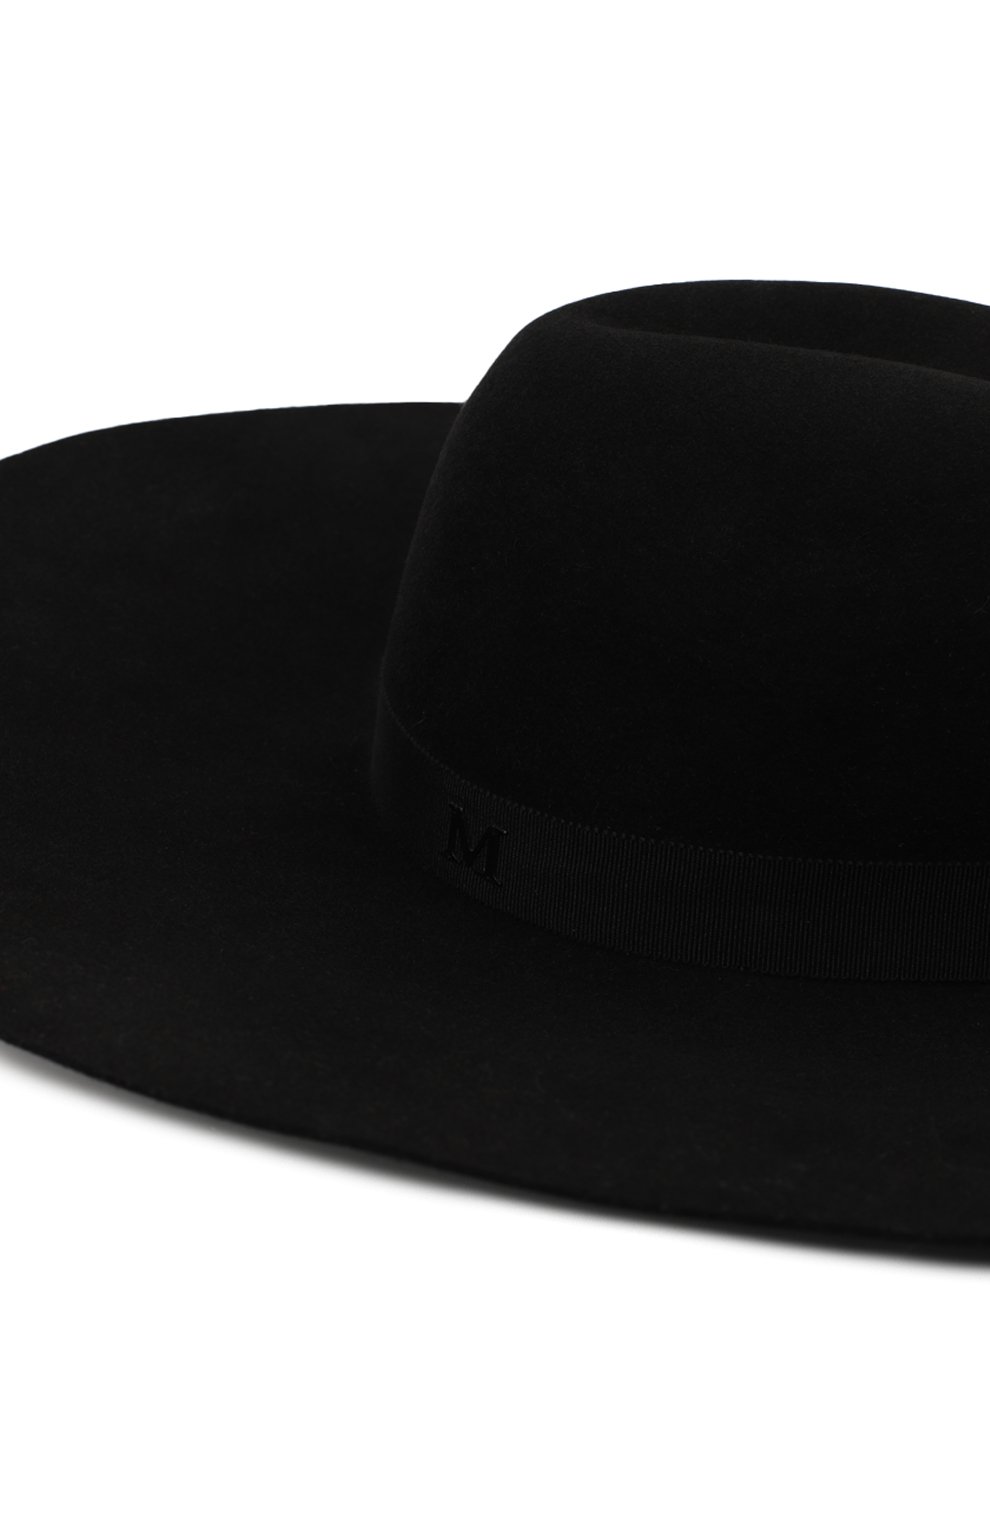 Шляпа | Maison Michel | Чёрный - 3